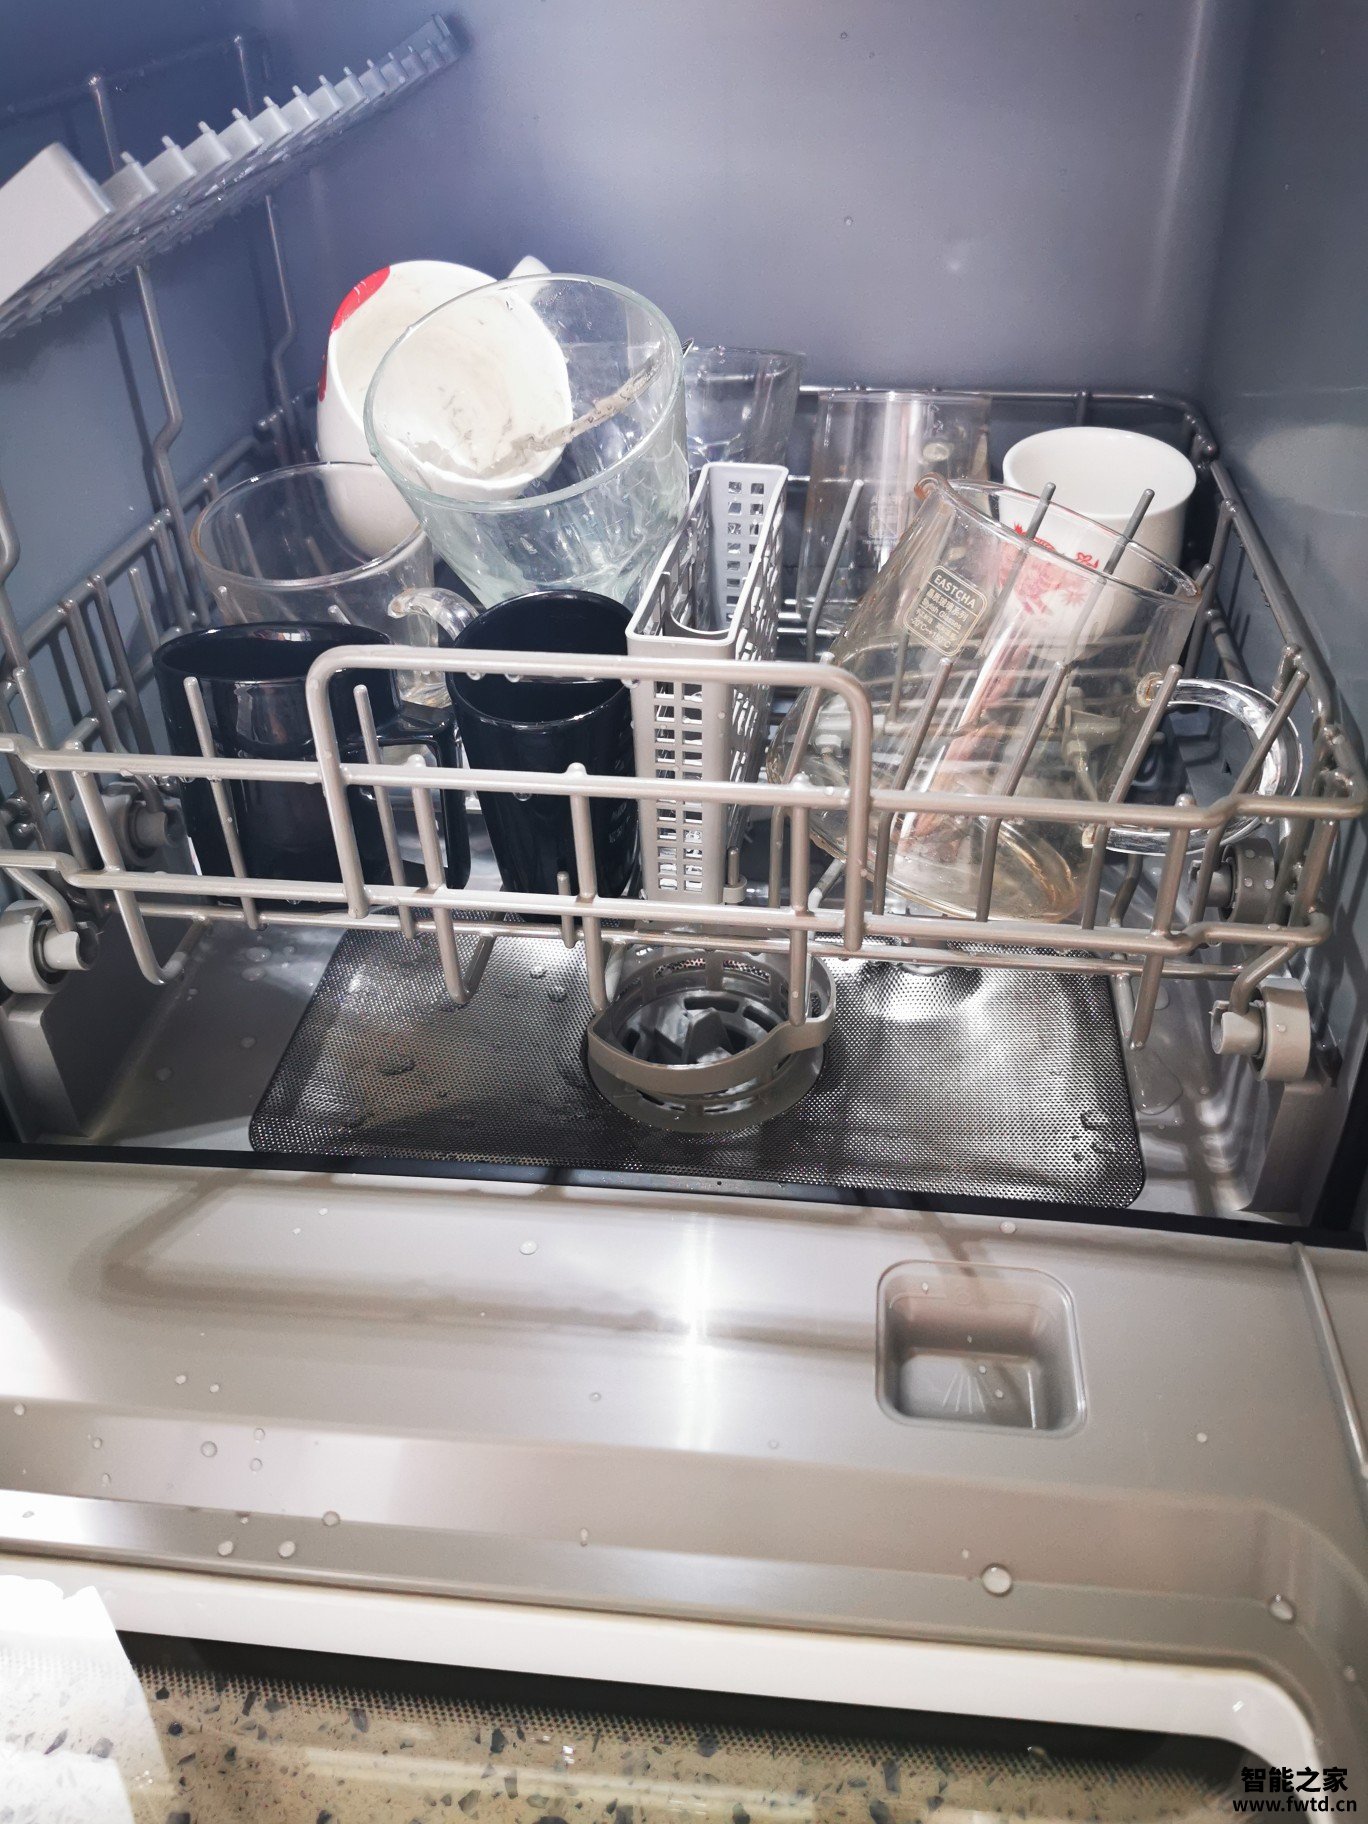 体验评测美的RX20洗碗机怎么样吗?真实感受大揭秘! (图9)